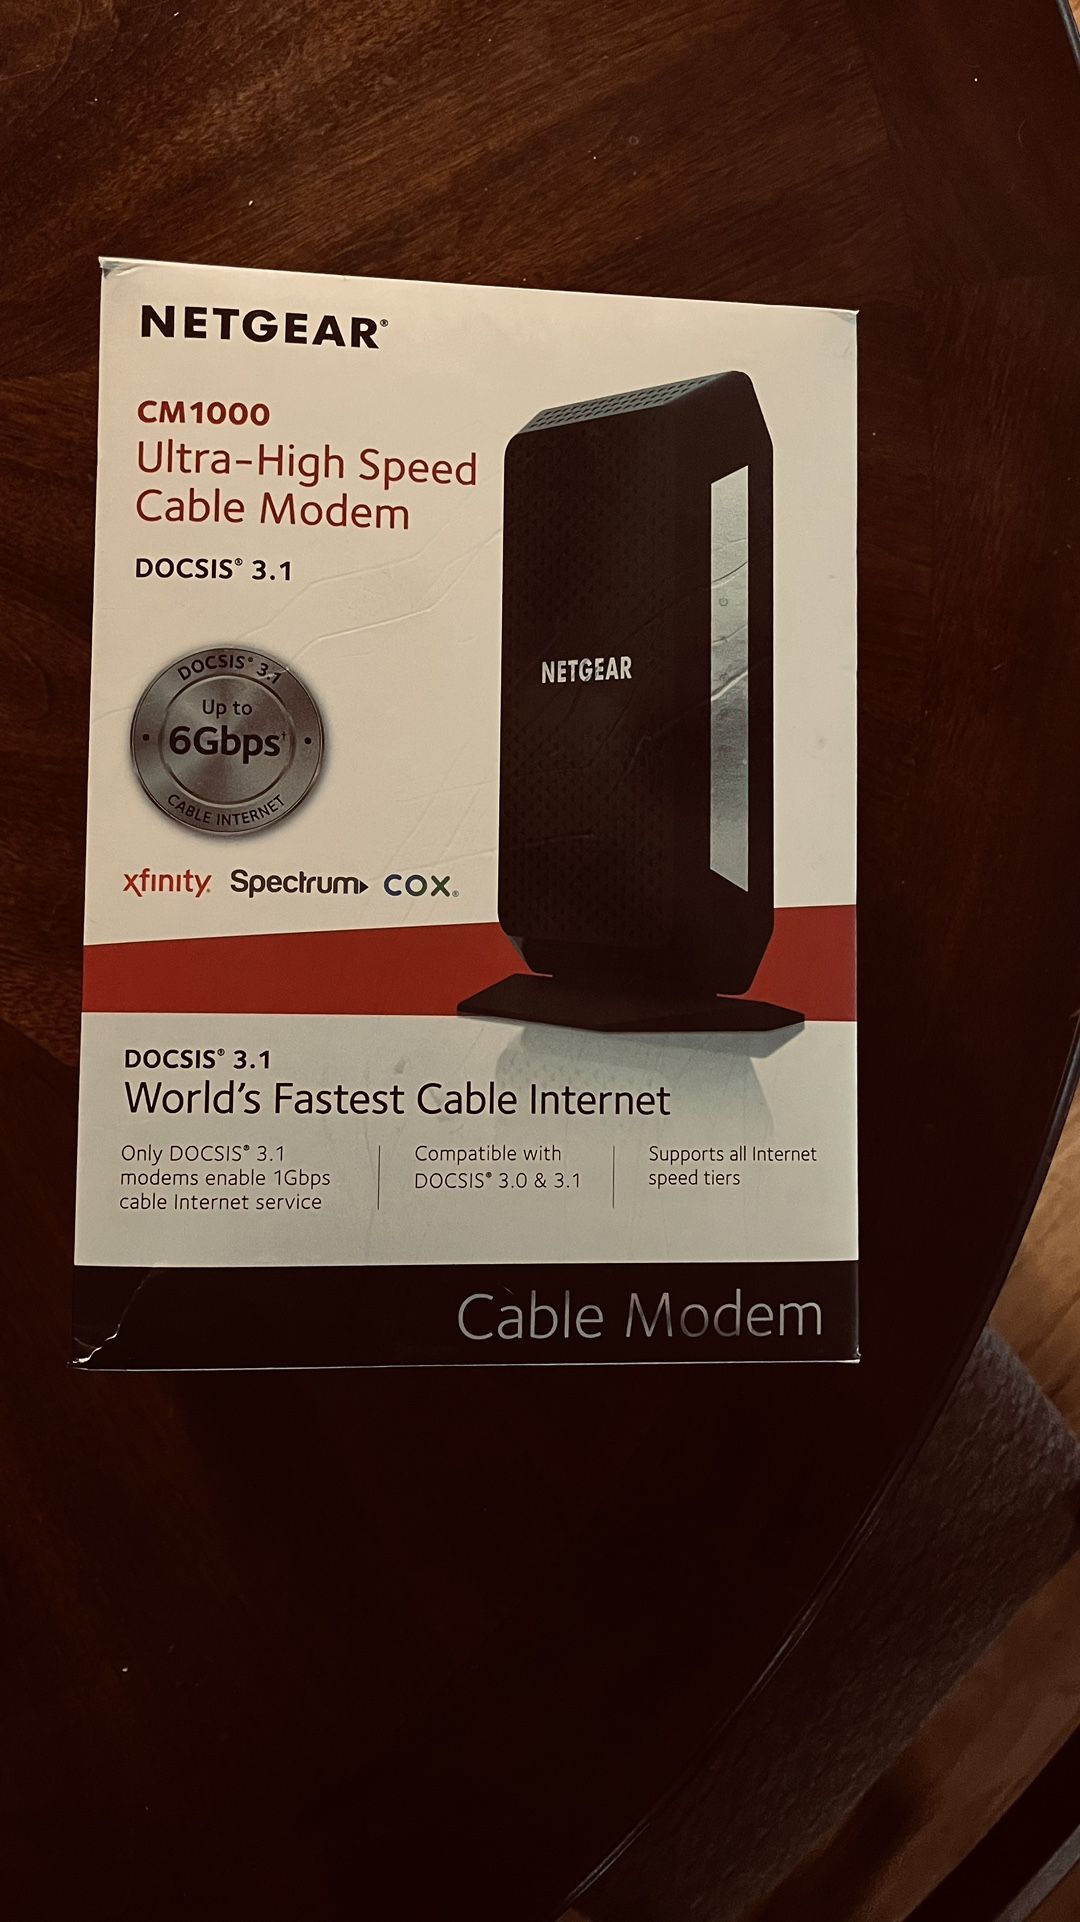 Netgear ultra high speed, cable modem